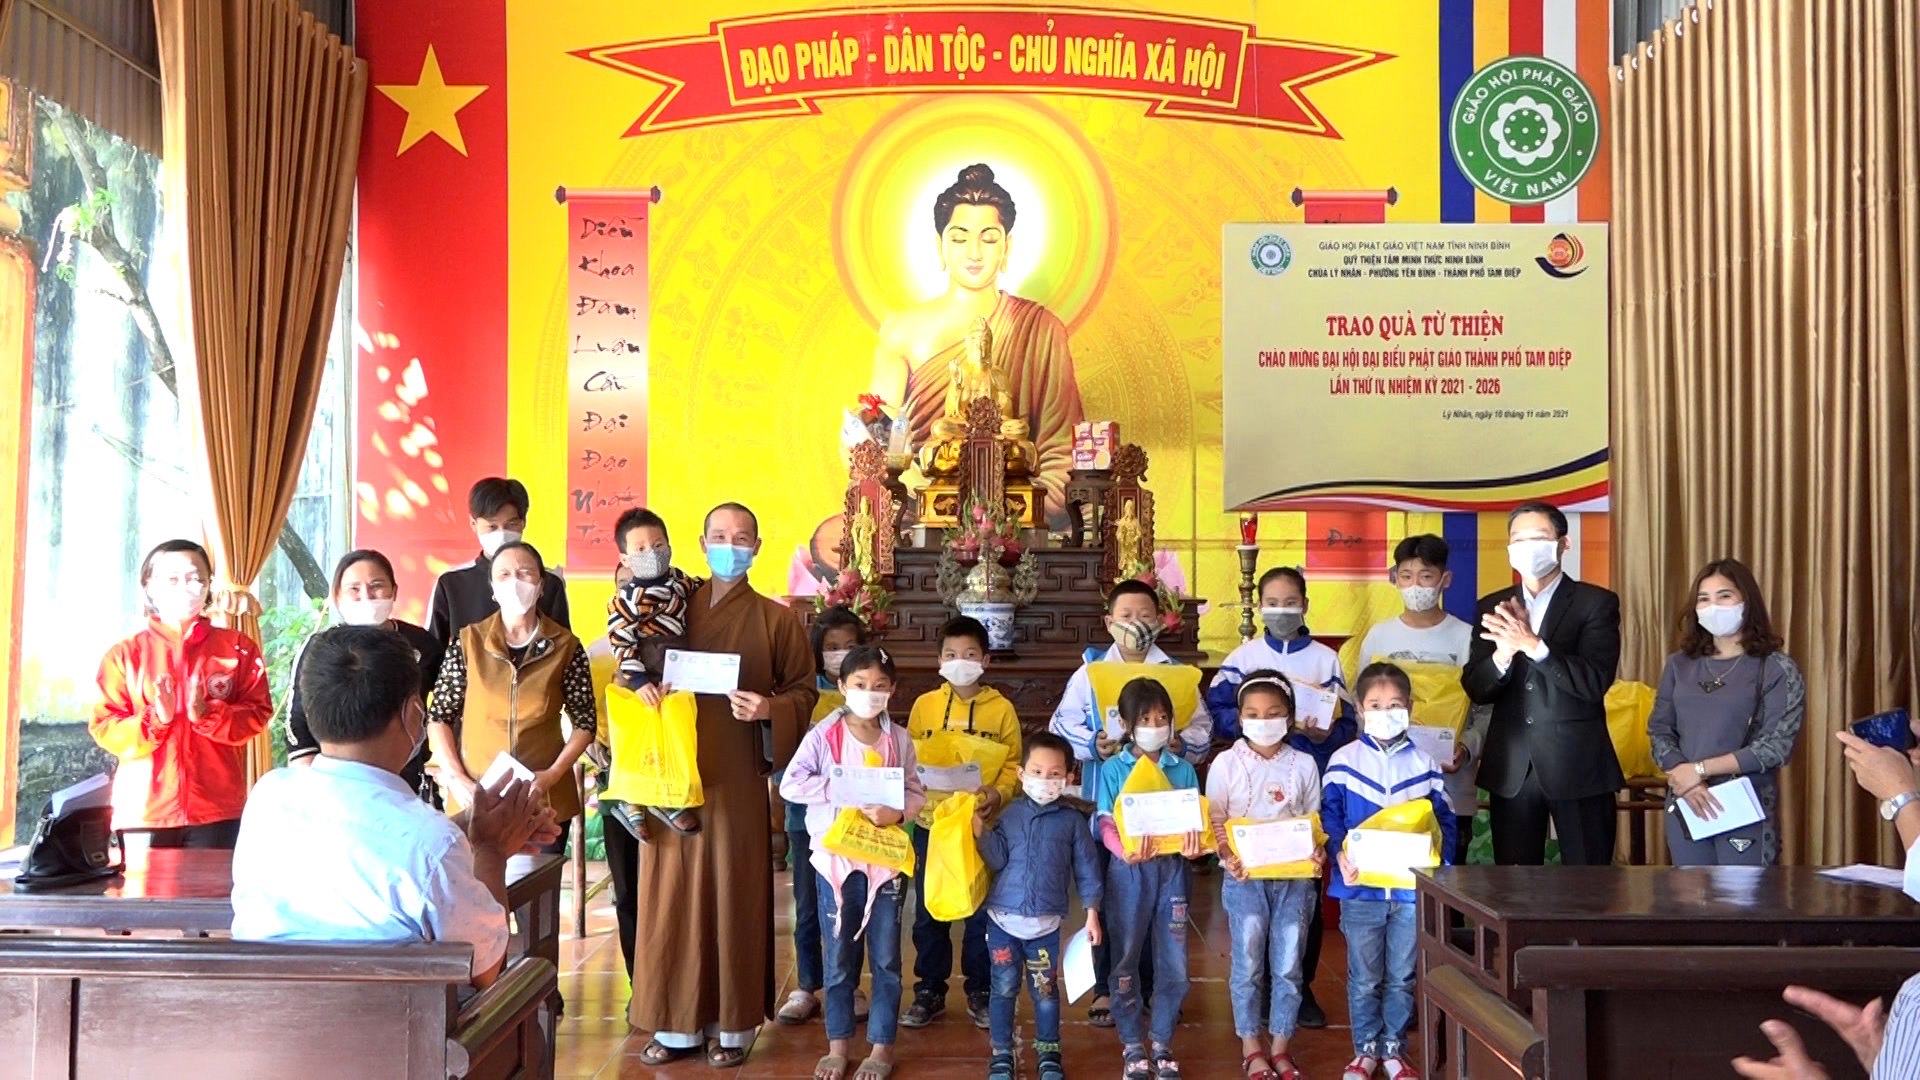 Ủy ban MTTQ Việt Nam phường Yên Bình phối hợp với Qũy Thiện Tâm Minh Thức Ninh Bình, Chùa Lý Nhân và các Phật tử trao quà từ thiện cho trẻ em mồ côi, có hoàn khó khăn trên địa bàn thành phố